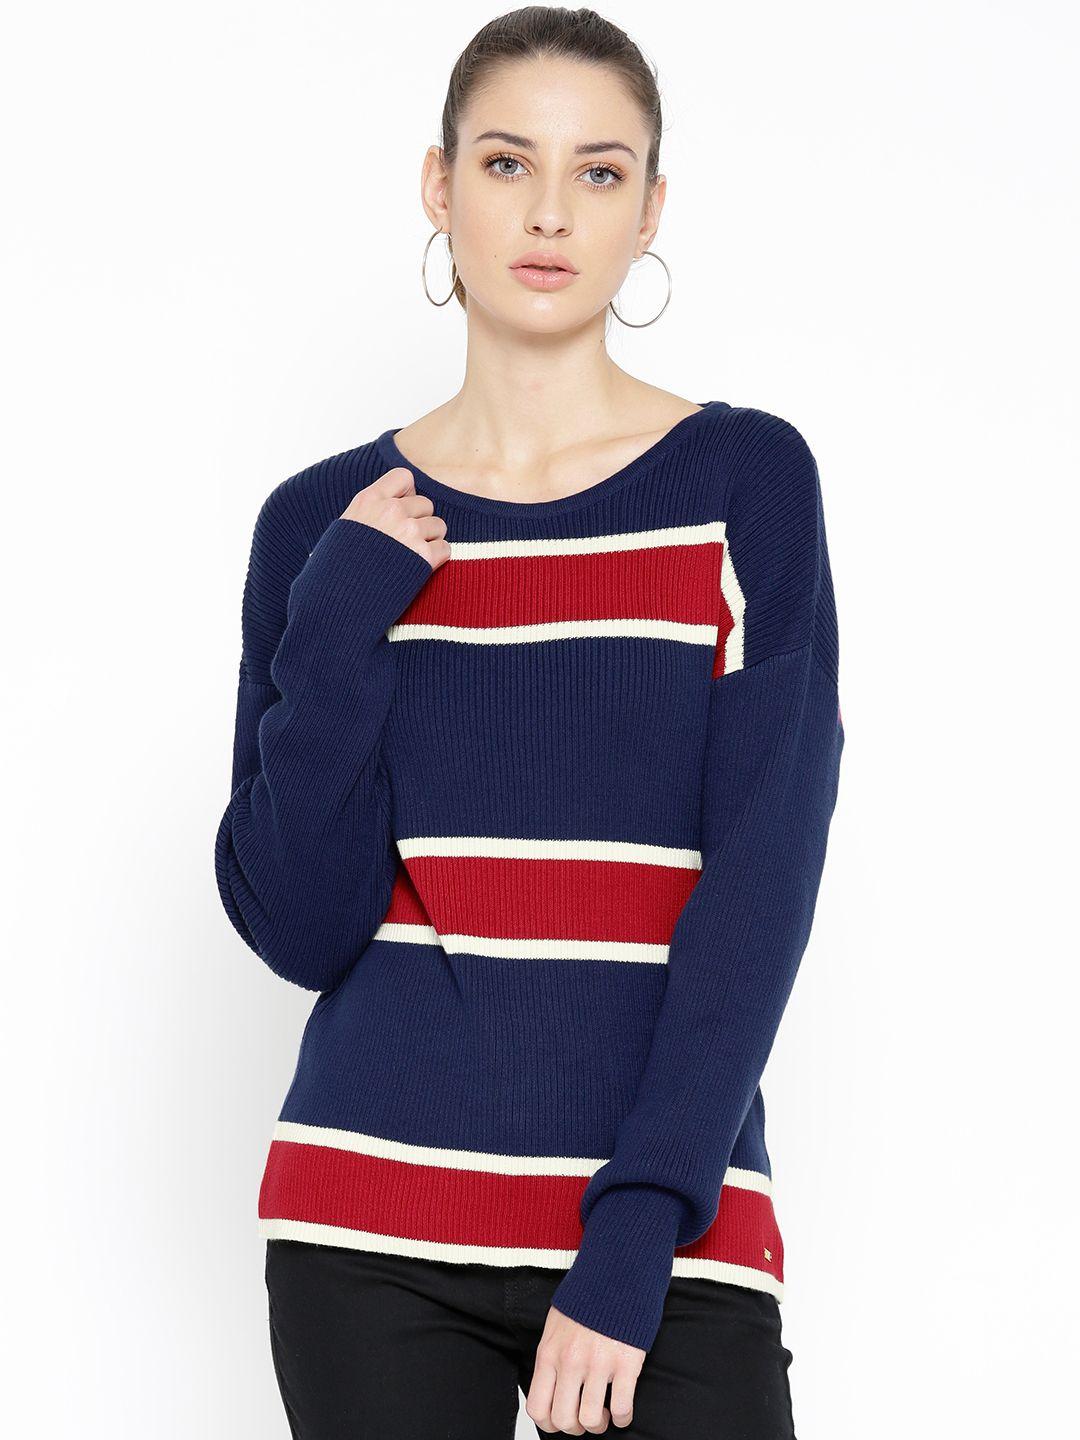 u.s. polo assn. women navy blue & red sweater